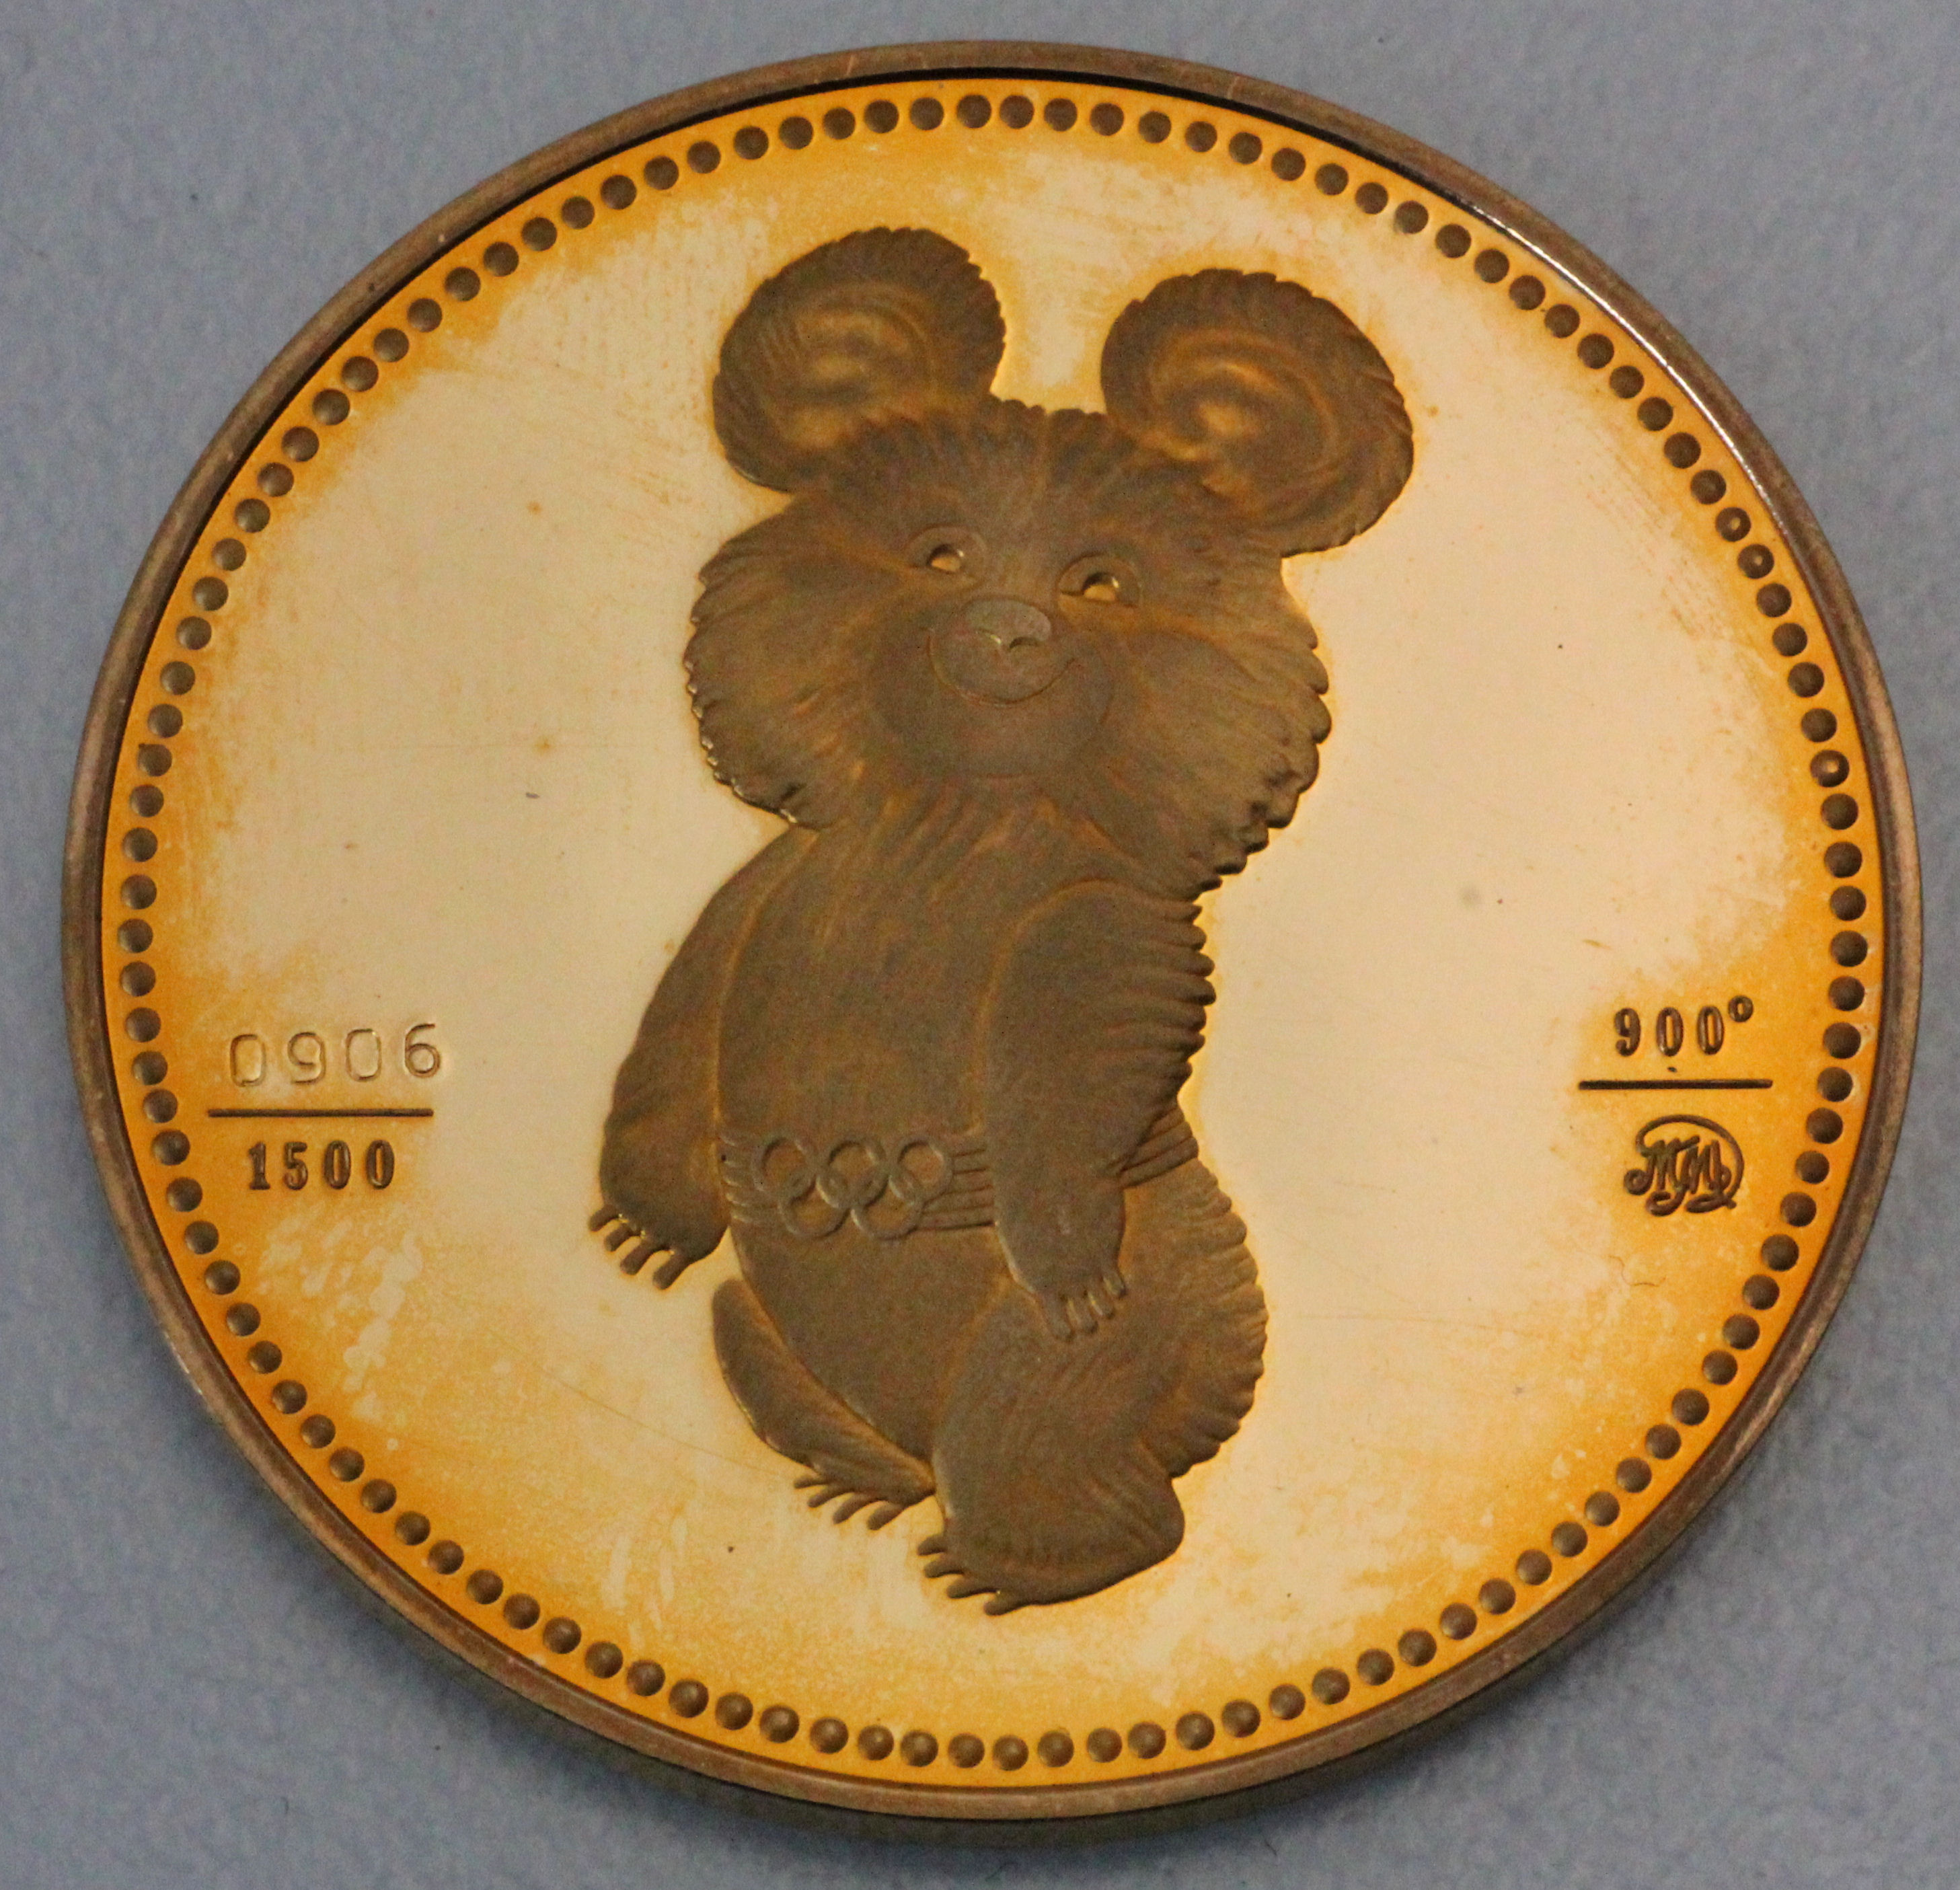 4 80 в рублях. Медаль Олимпийский мишка. Жетон мишка Олимпийский 1980. Золотая Юбилейная медаль Олимпийский мишка 80. Олимпийский мишка 1980 золотистый.